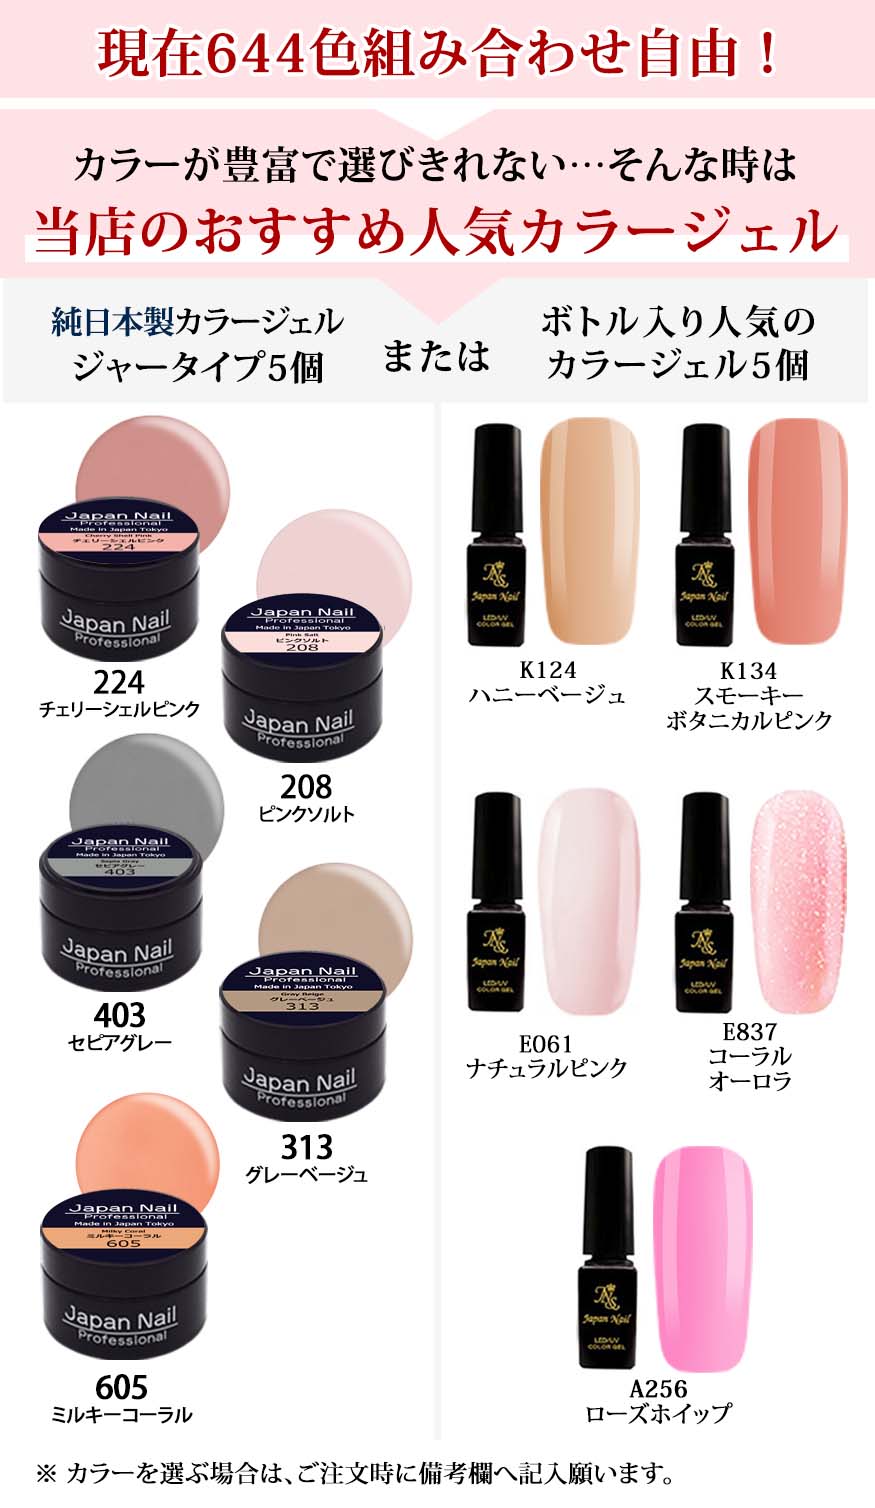 安心の日本製ジェルネイルキット 化粧品登録済n2日本全国送料無料 | ジェルネイル通販のジャパンネイル